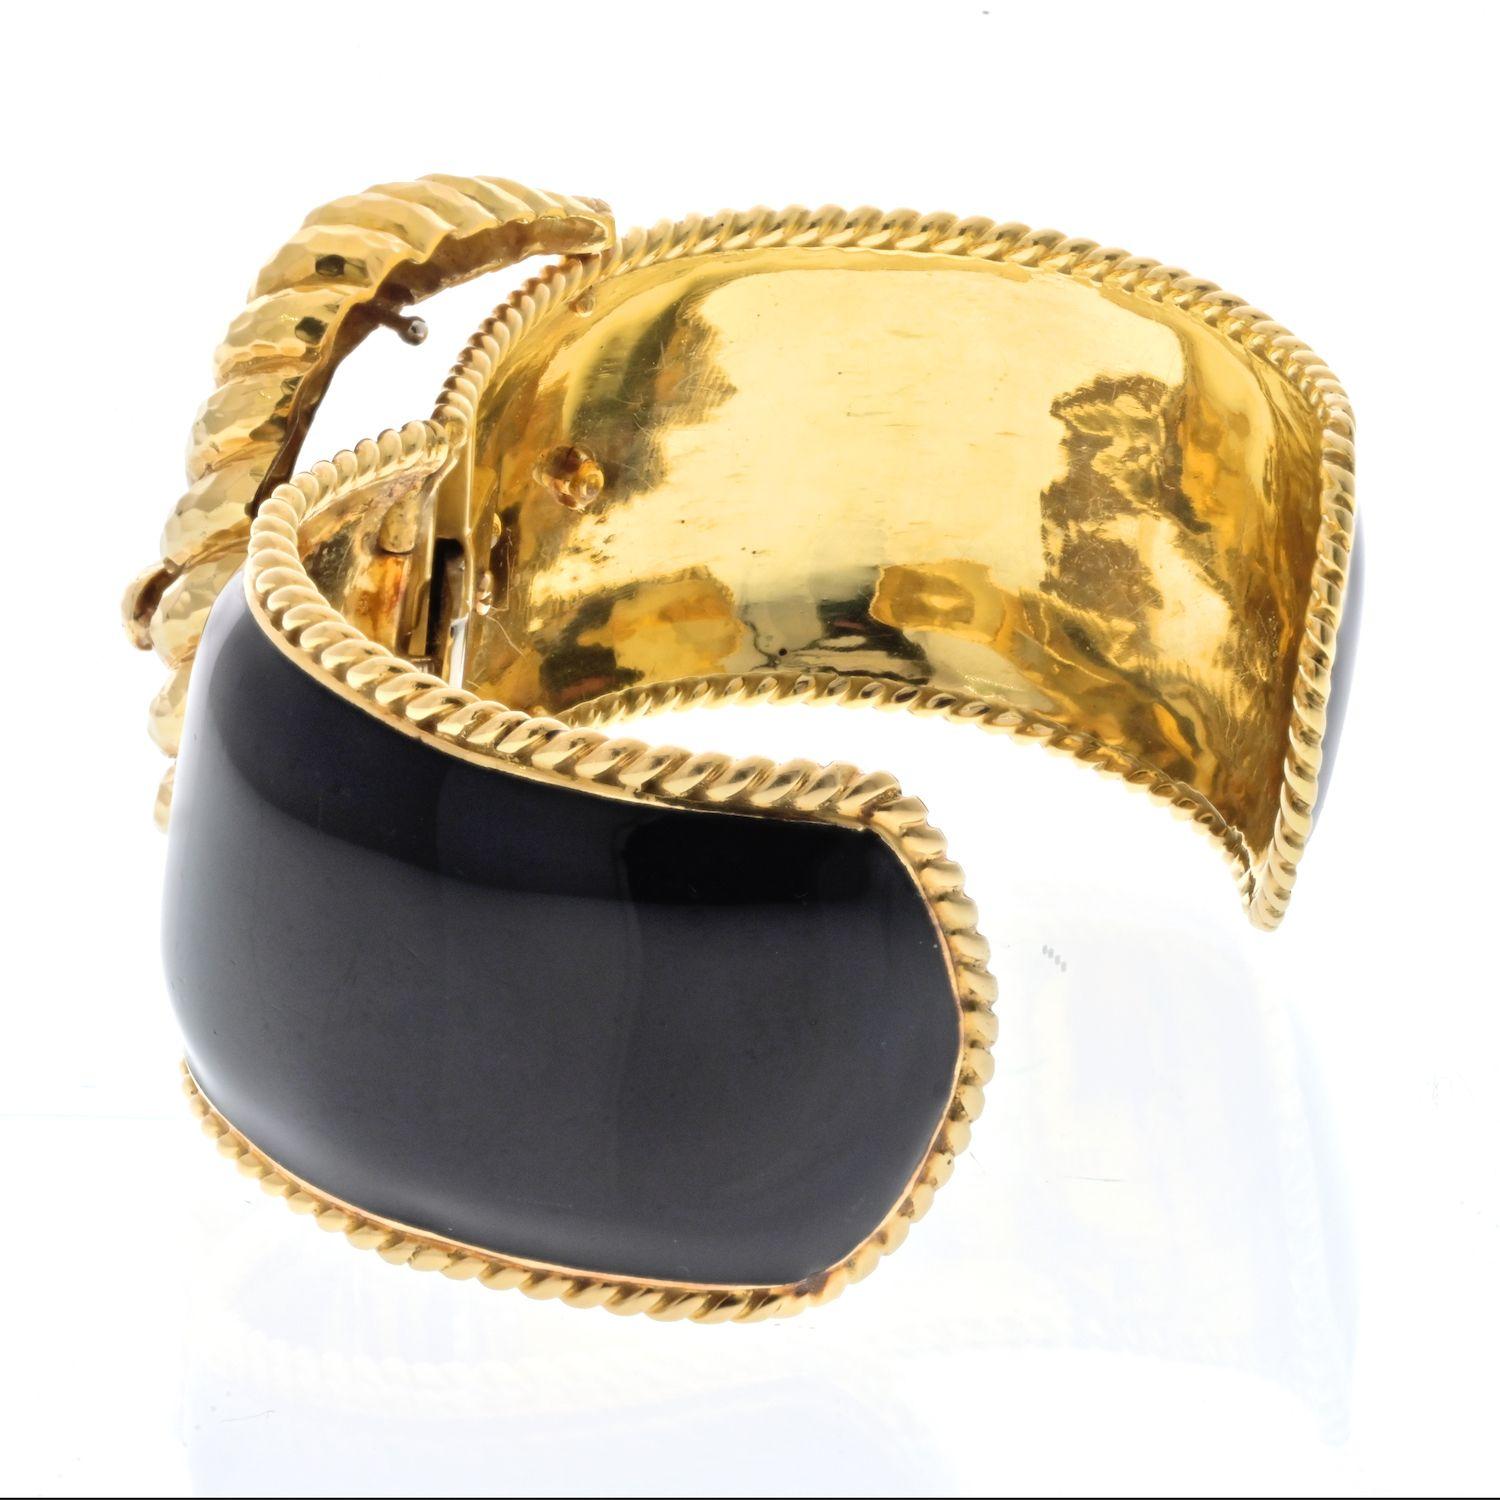 Le bracelet manchette en or jaune 18k de David Webb est un superbe bijou qui illustre la signature artisanale et le design unique de la marque. Façonné comme une boucle d'ancre, le bracelet présente un remarquable mélange d'élégance et d'inspiration